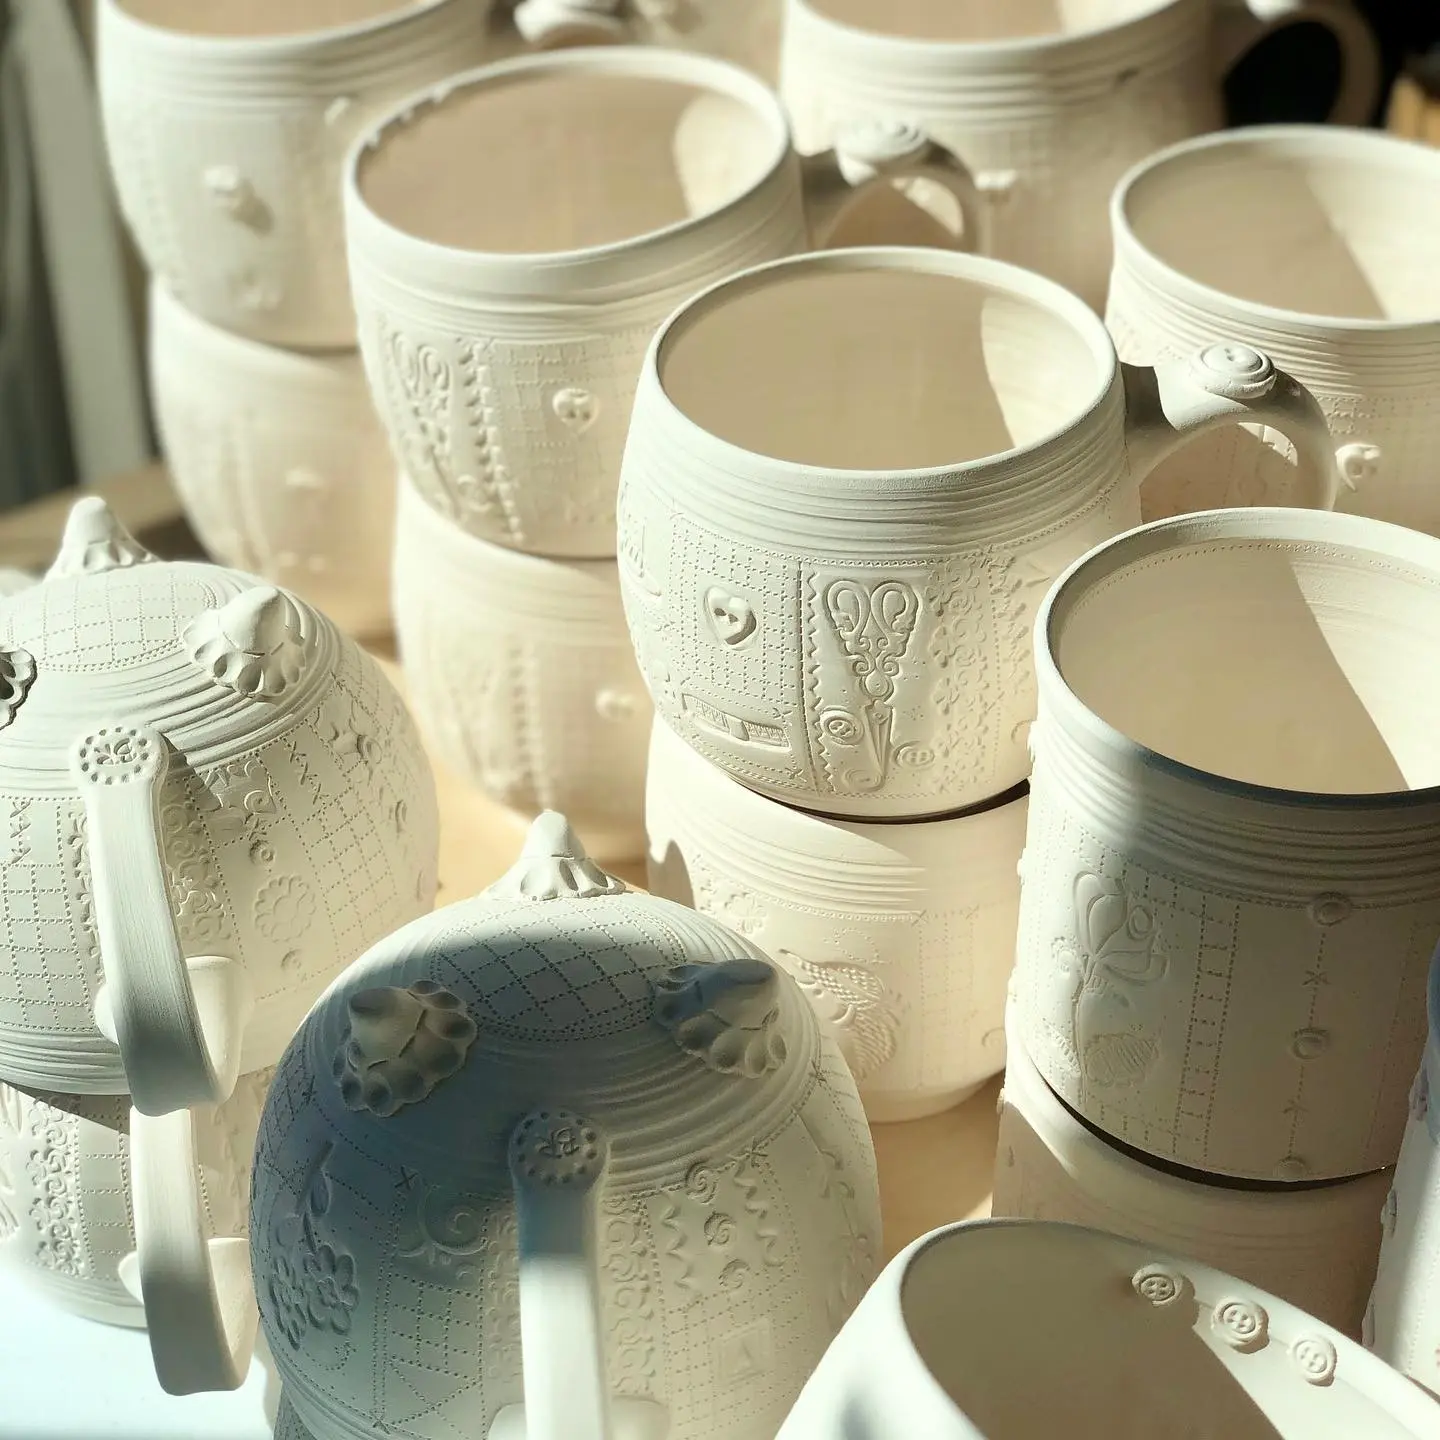 Brigitte Richard's ceramic